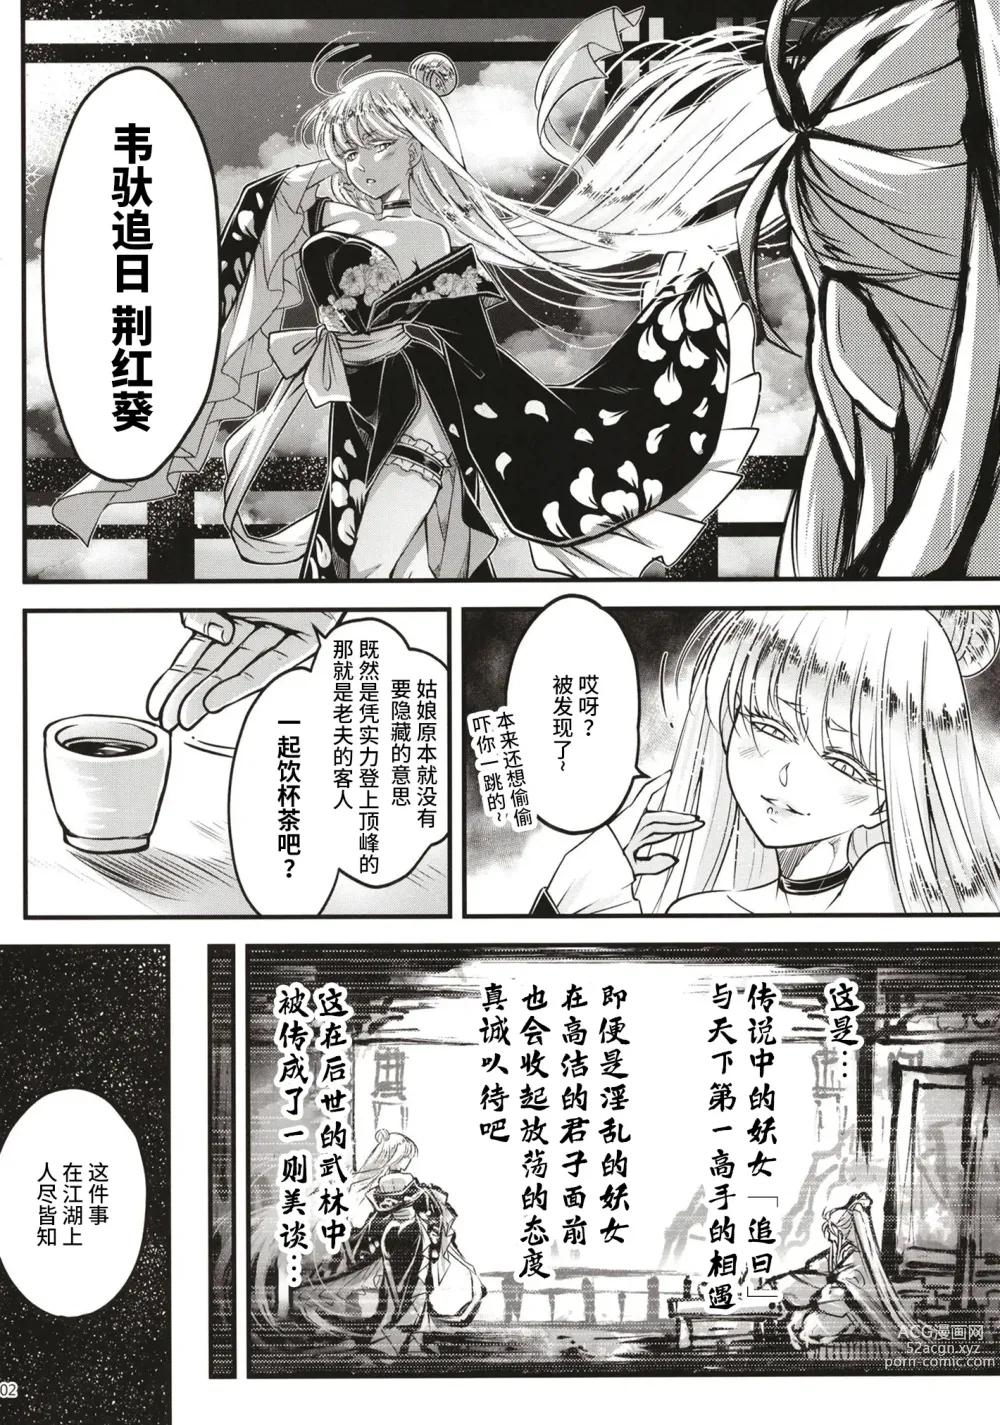 Page 3 of doujinshi Hyakkasou 11 Idatsu Ijitsu Gaiden